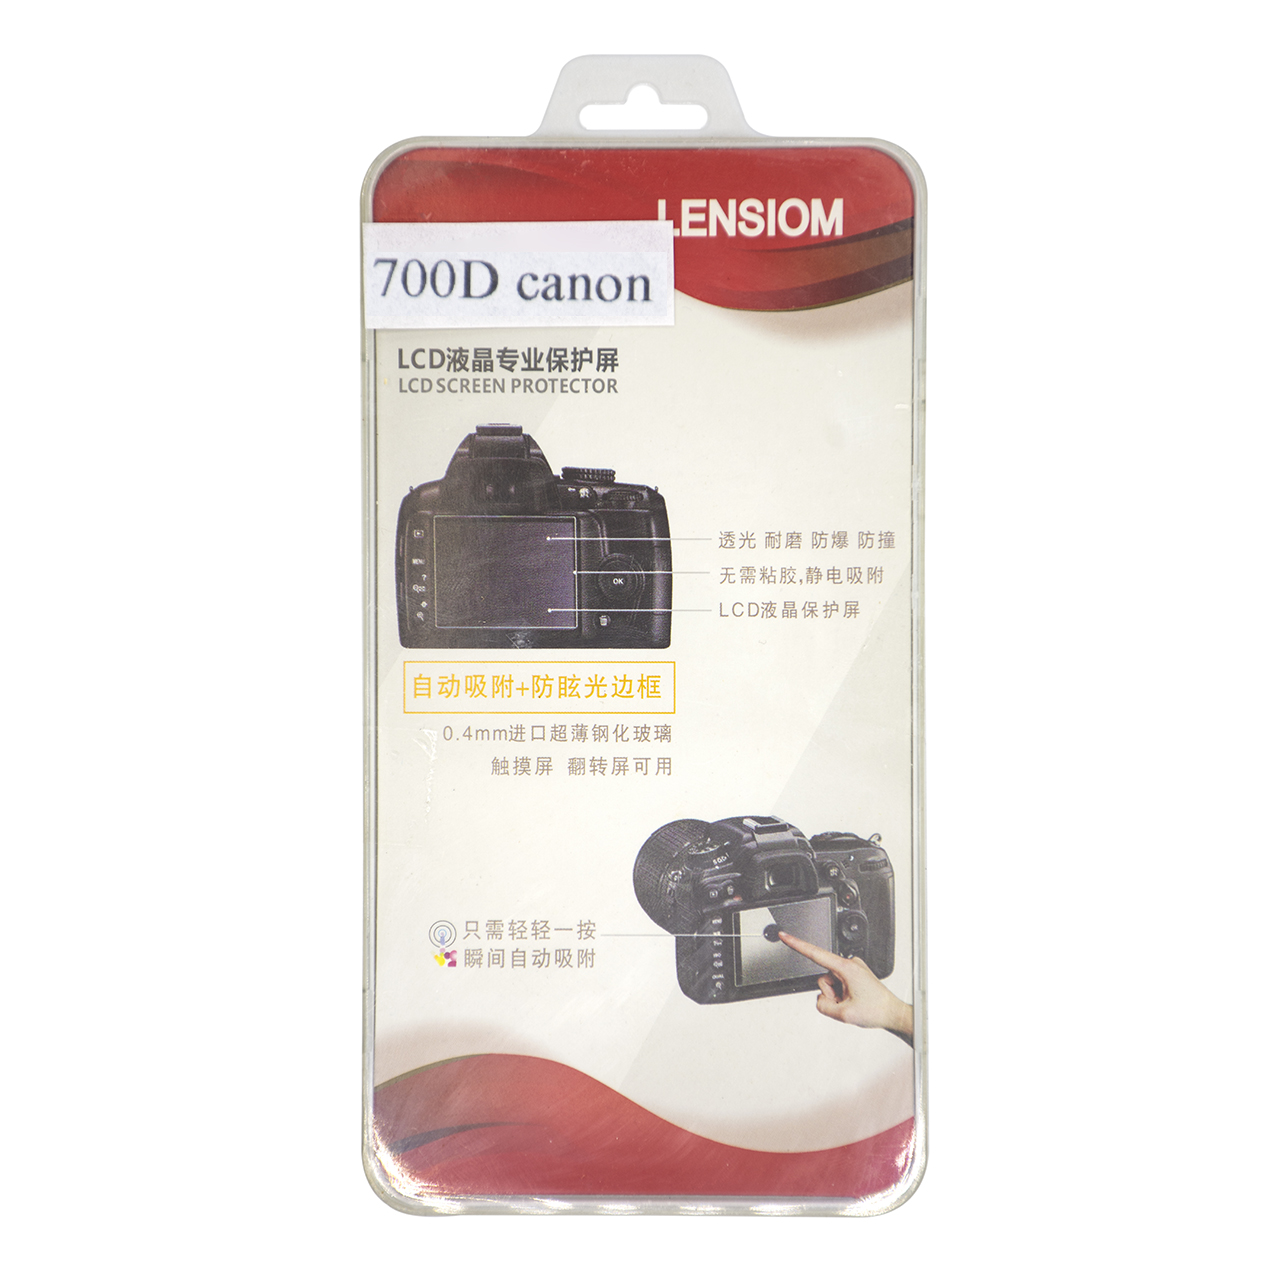 محافظ صفحه نمایش دوربین لنزیوم مدل L700D مناسب برای کانن 700D